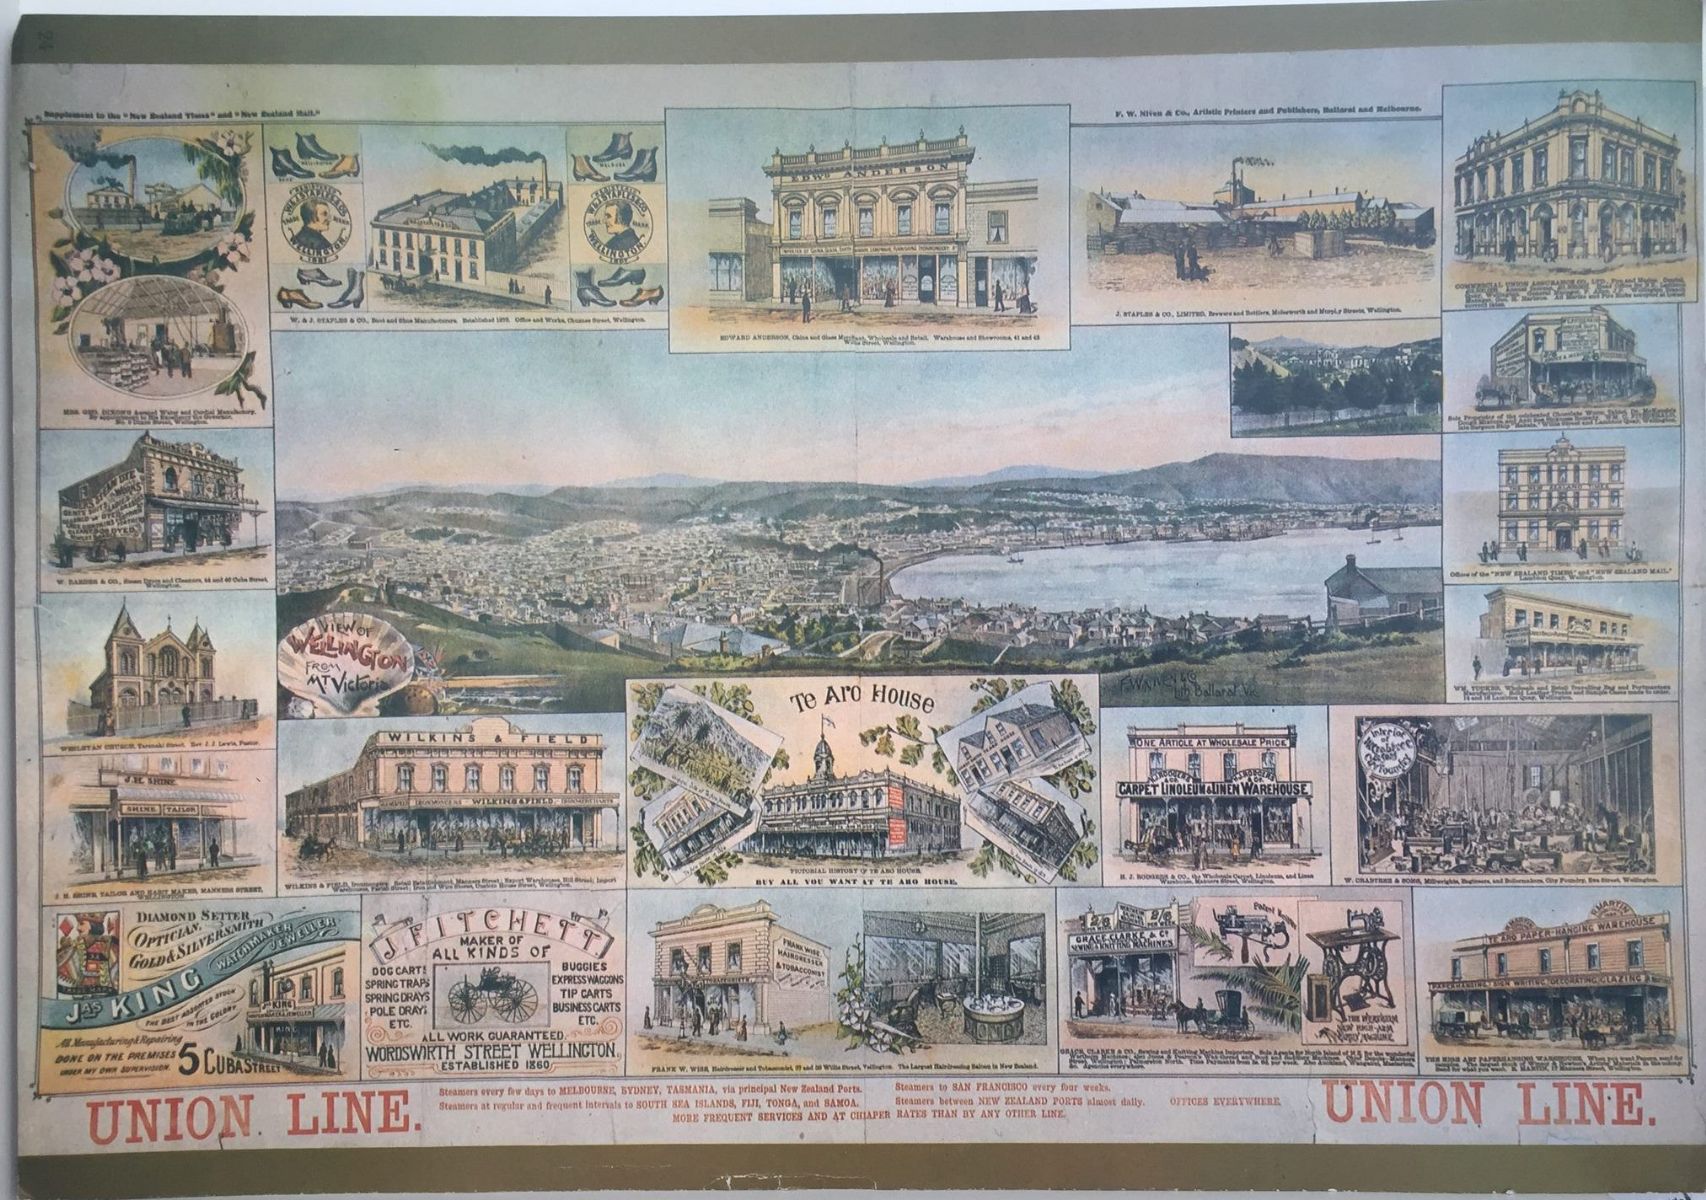 VINTAGE POSTER: Union Line 1895